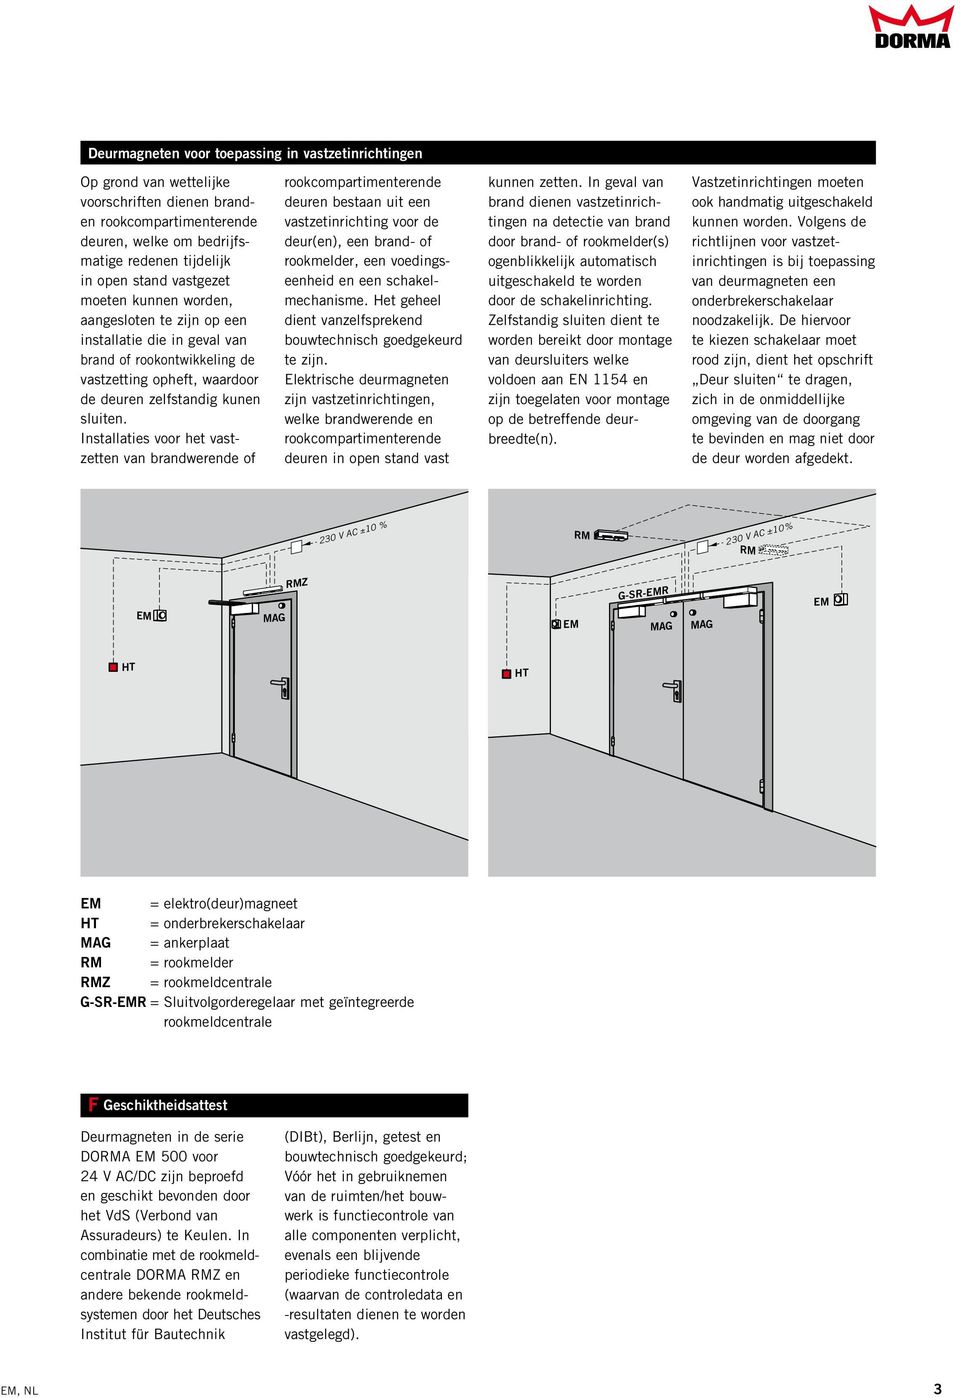 Installaties voor het vastzetten van brandwerende of rookcompartimenterende deuren bestaan uit een vastzetinrichting voor de deur(en), een brand- of rookmelder, een voedingseenheid en een